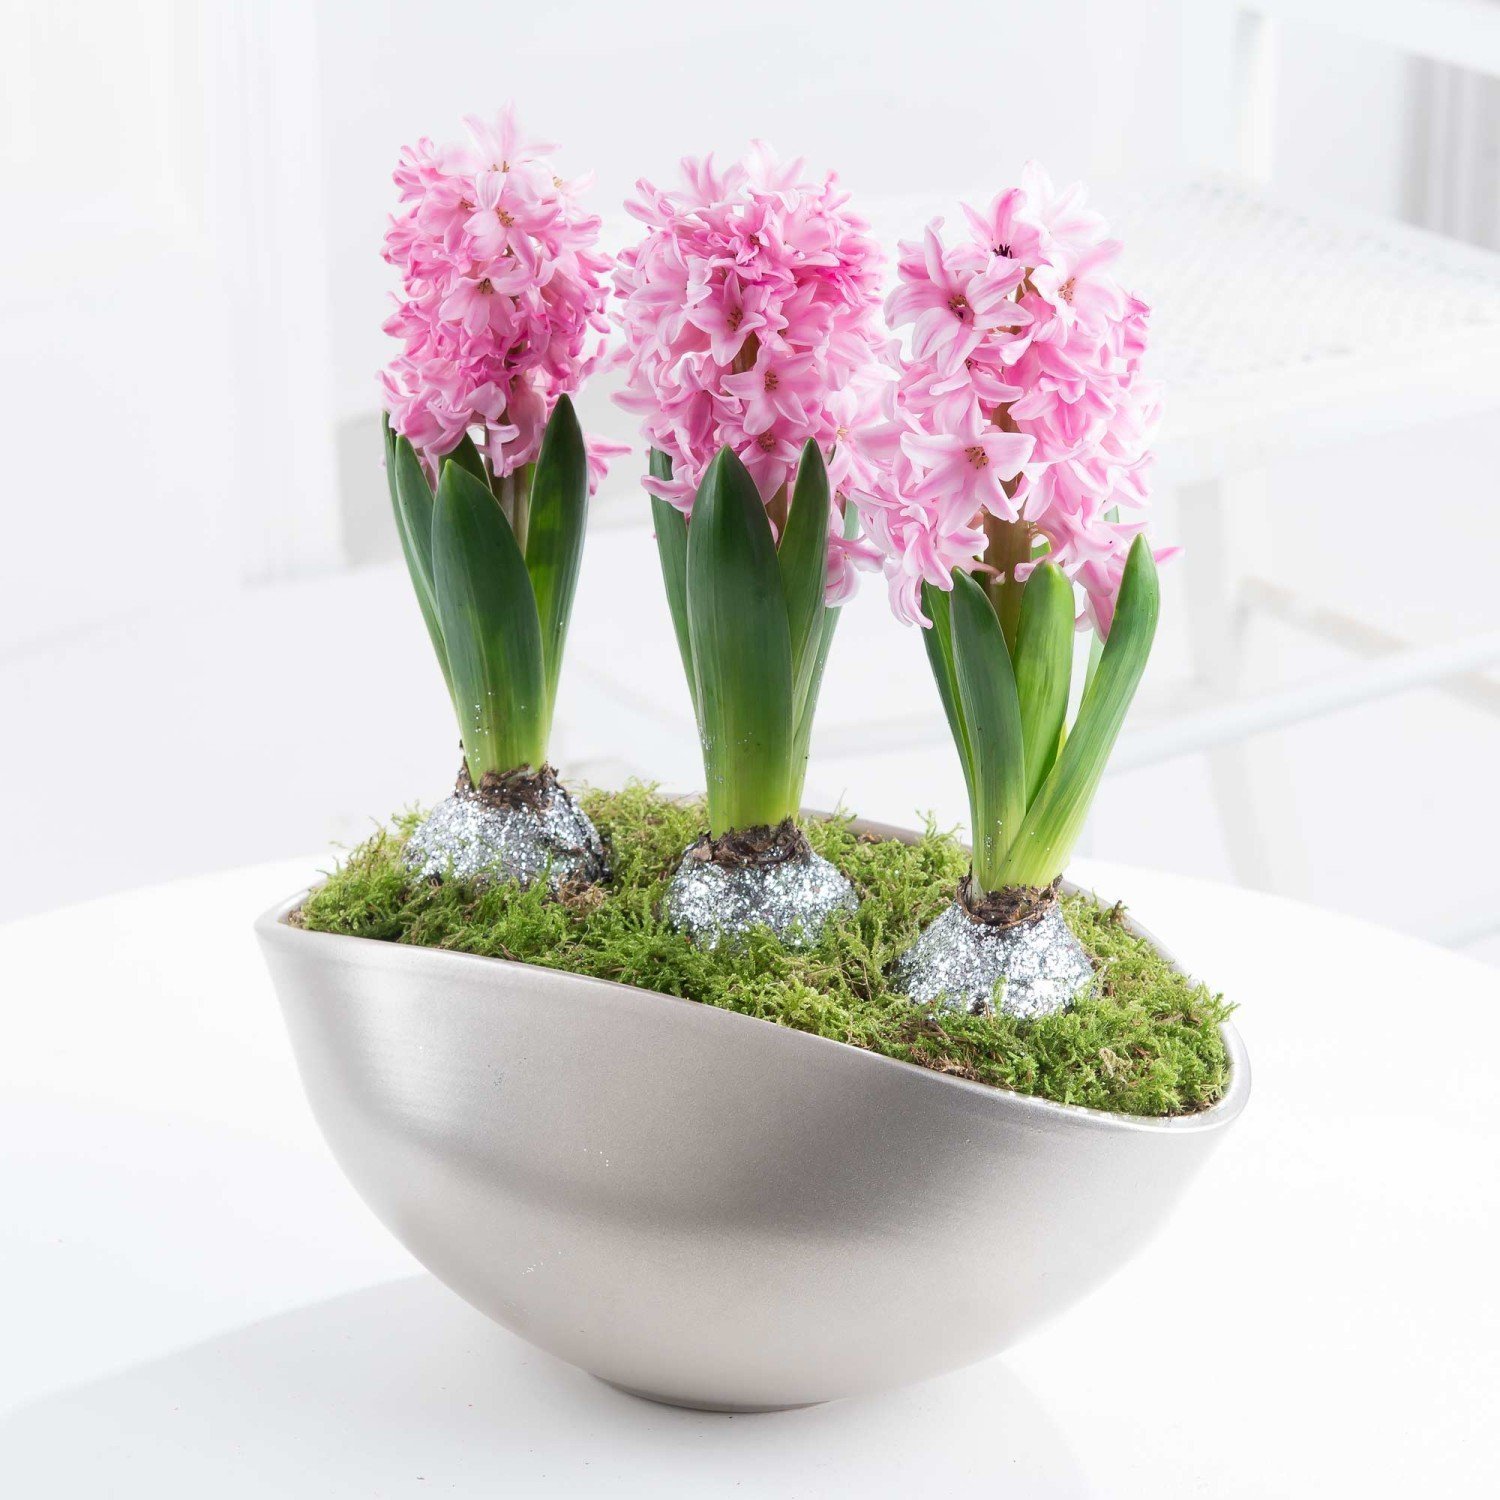 Budete-li mít v místnosti chladněji, vydrží hyacinty kvést déle